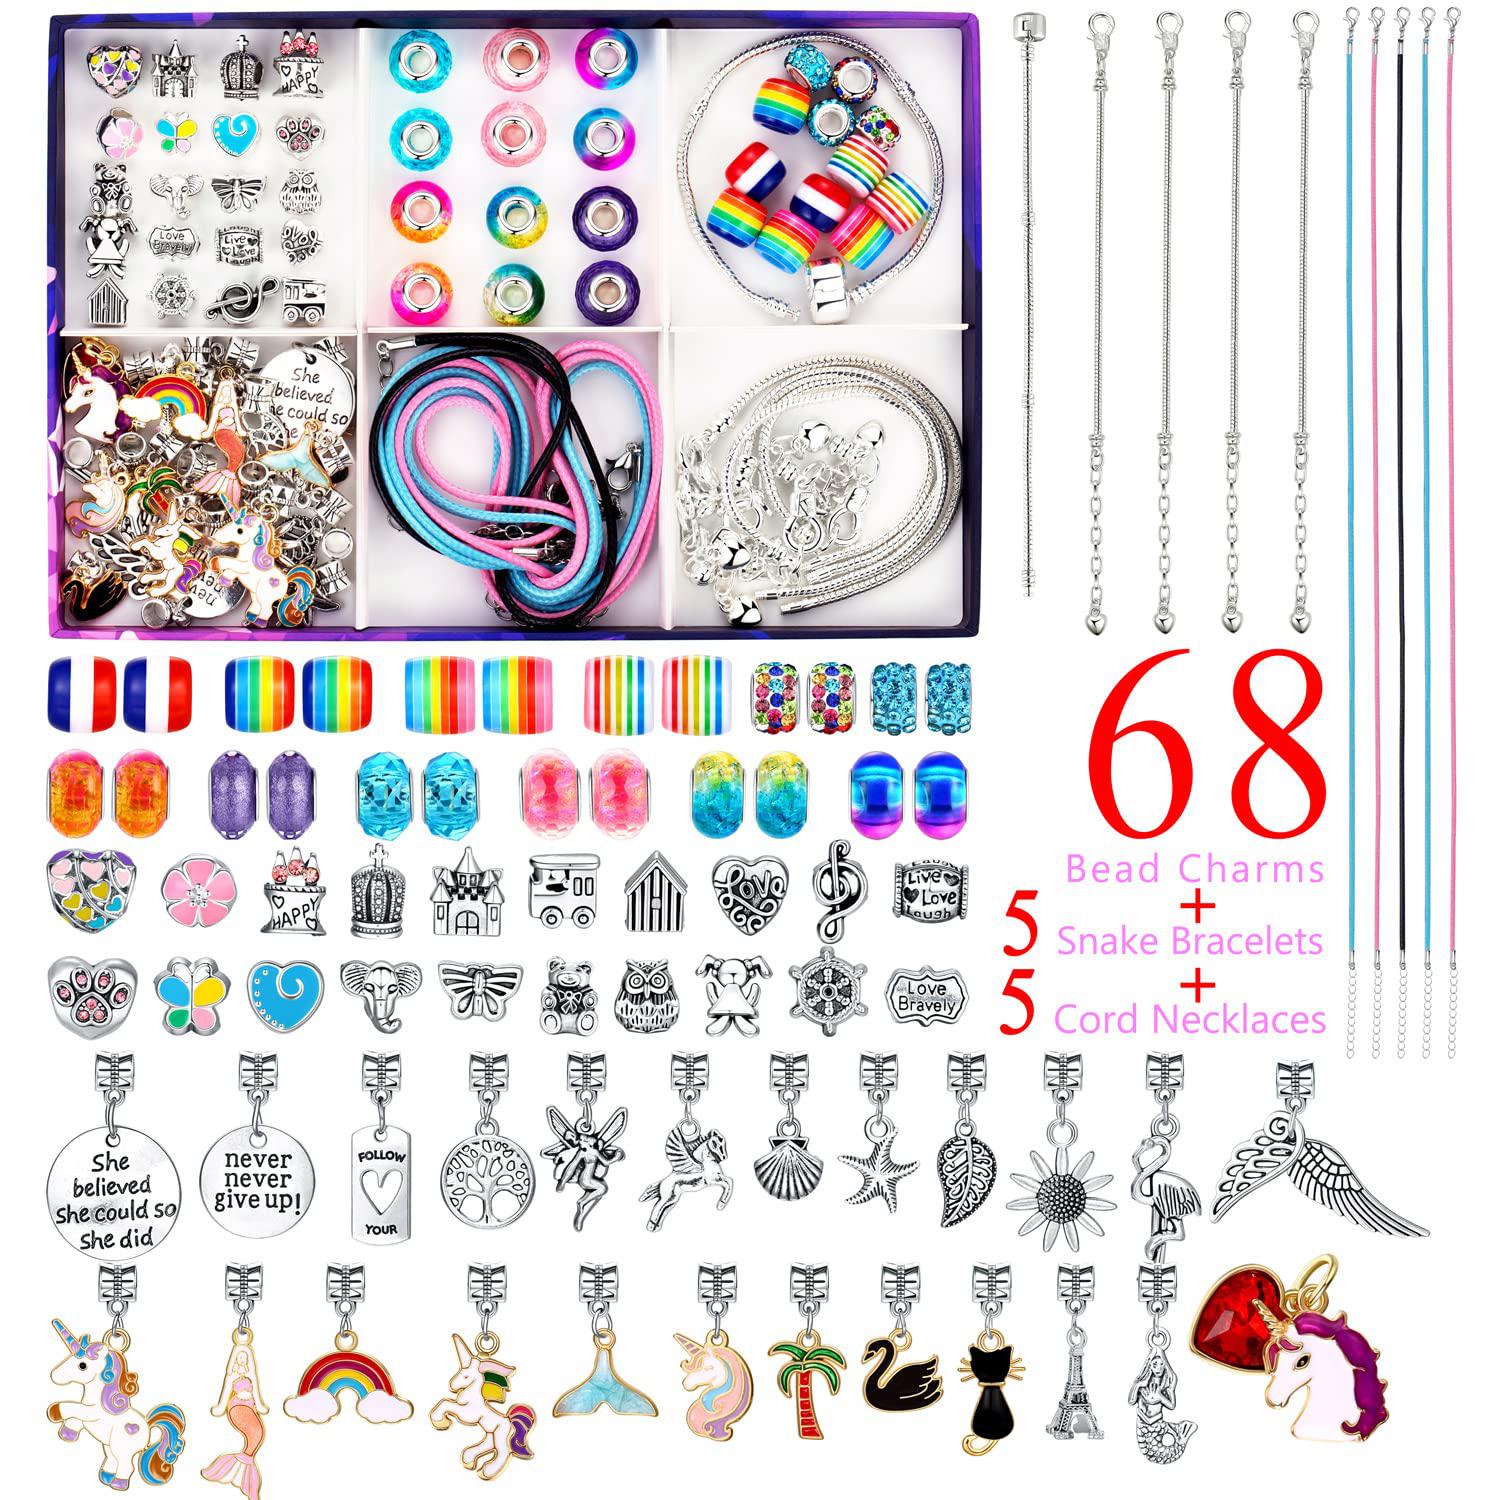 divas mode charm bracelet making kit for girls, unicorn/mermaid toys gifts  for girls age 6